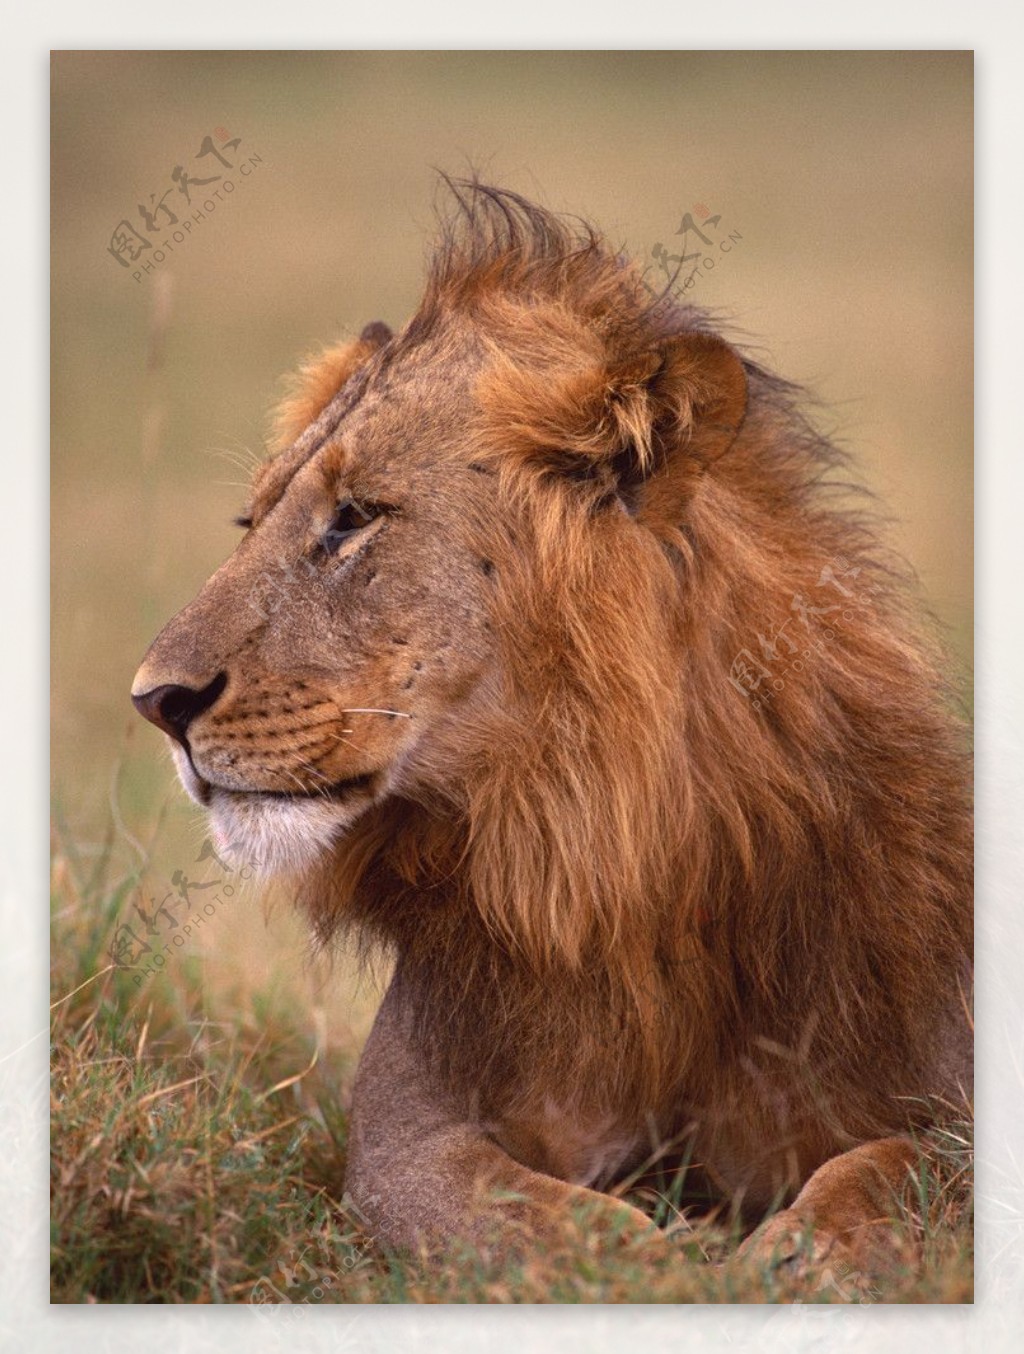 雄狮狮子动物表情野生动物图片